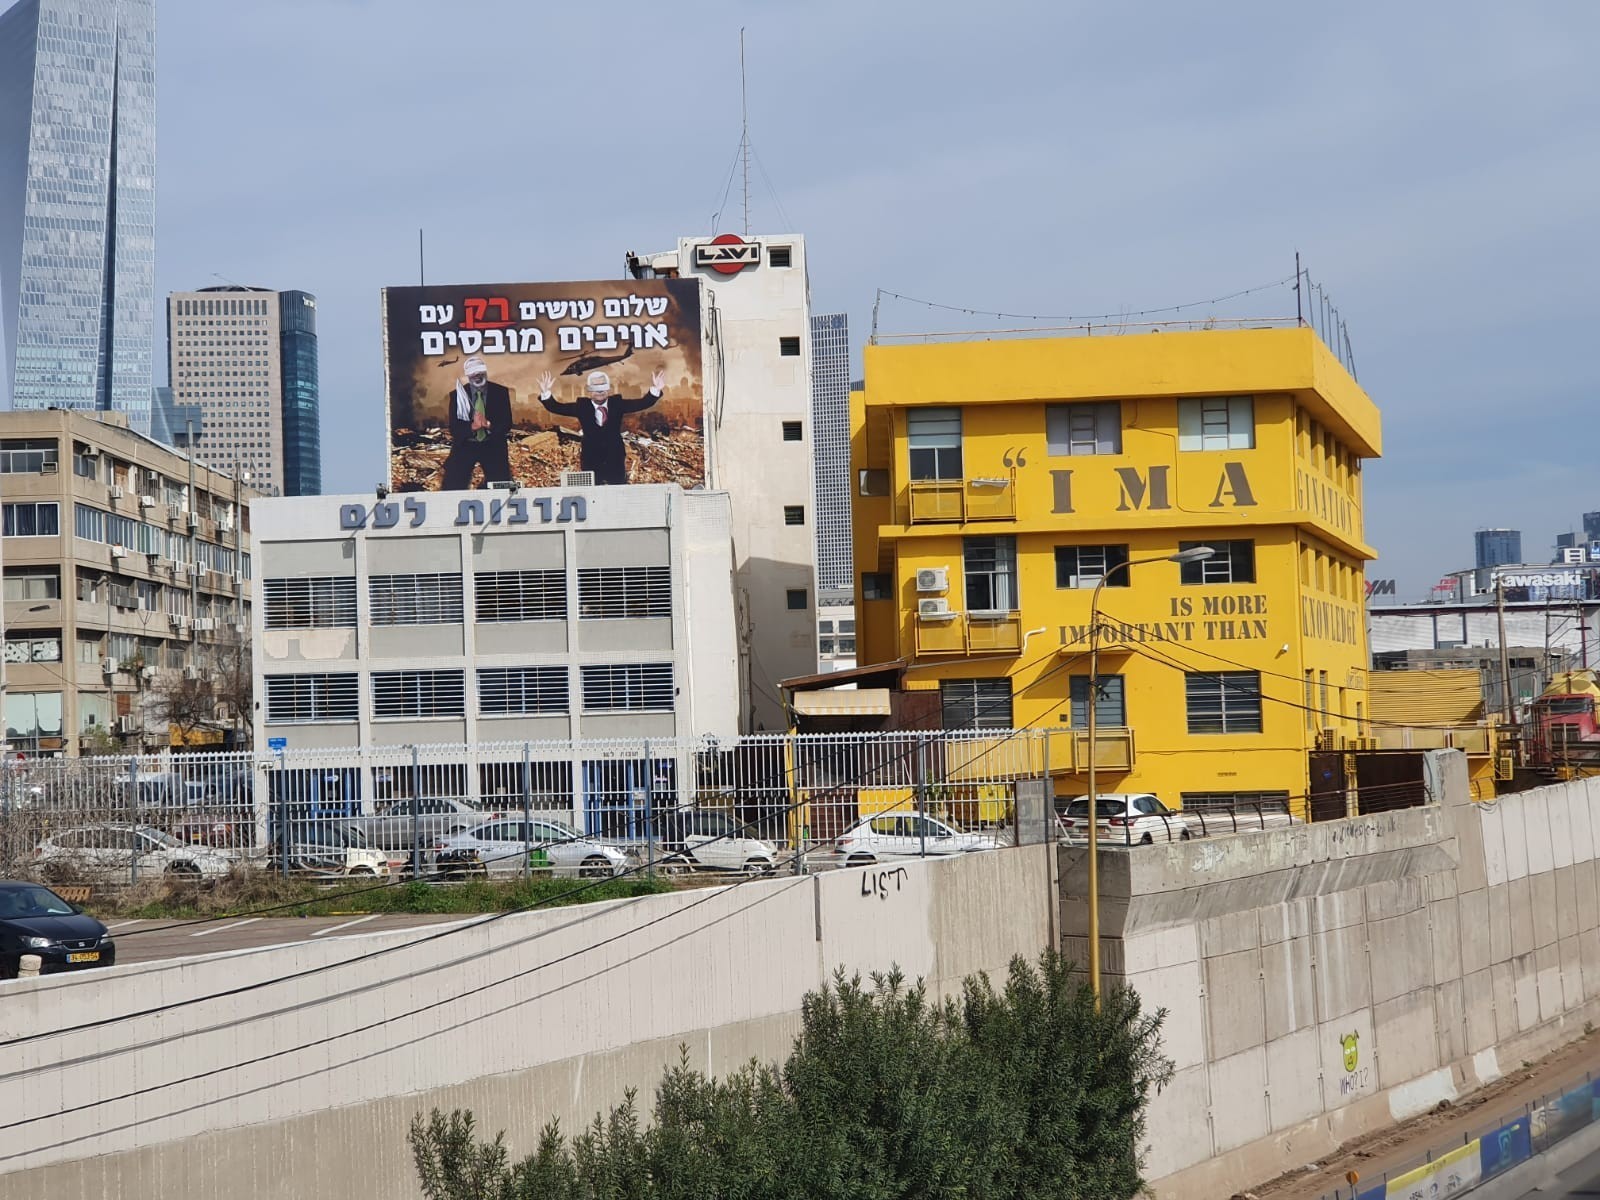 شاهد: الرئيس عباس وهنية على إعلانات دعائية يمينية وسط تل أبيب